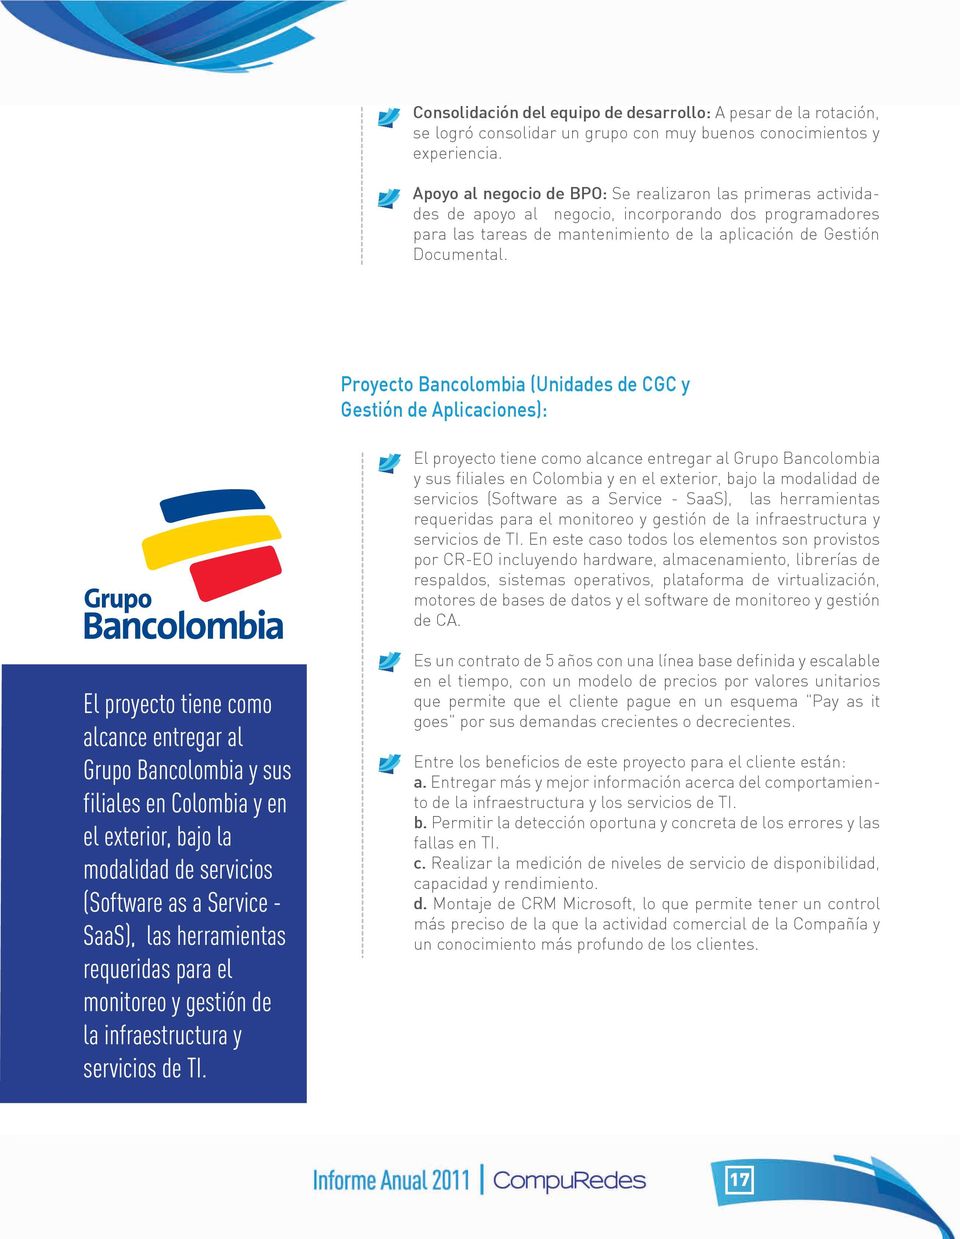 Proyecto Bancolombia (Unidades de CGC y Gestión de Aplicaciones): El proyecto tiene como alcance entregar al Grupo Bancolombia y sus filiales en Colombia y en el exterior, bajo la modalidad de